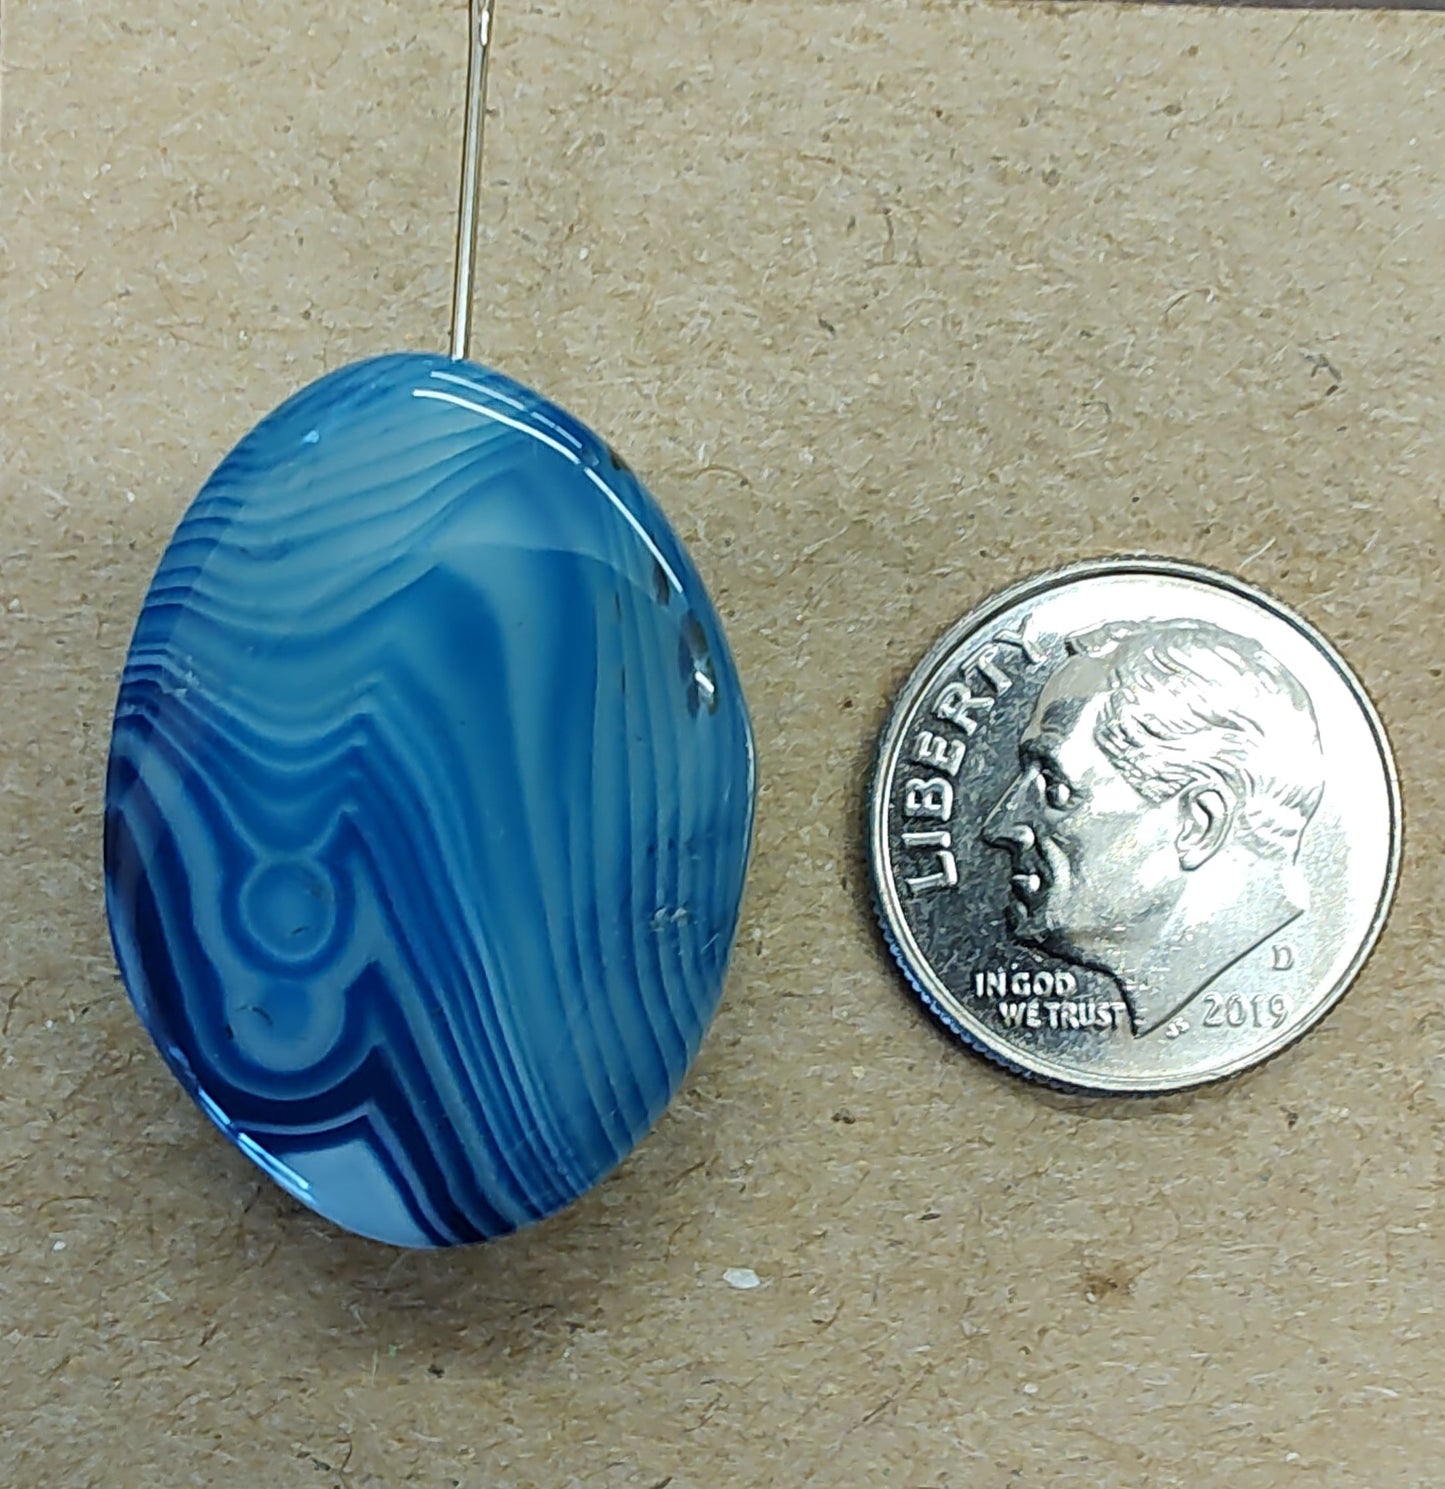 Needleminder- Blue Marbled Glass w/needle hole